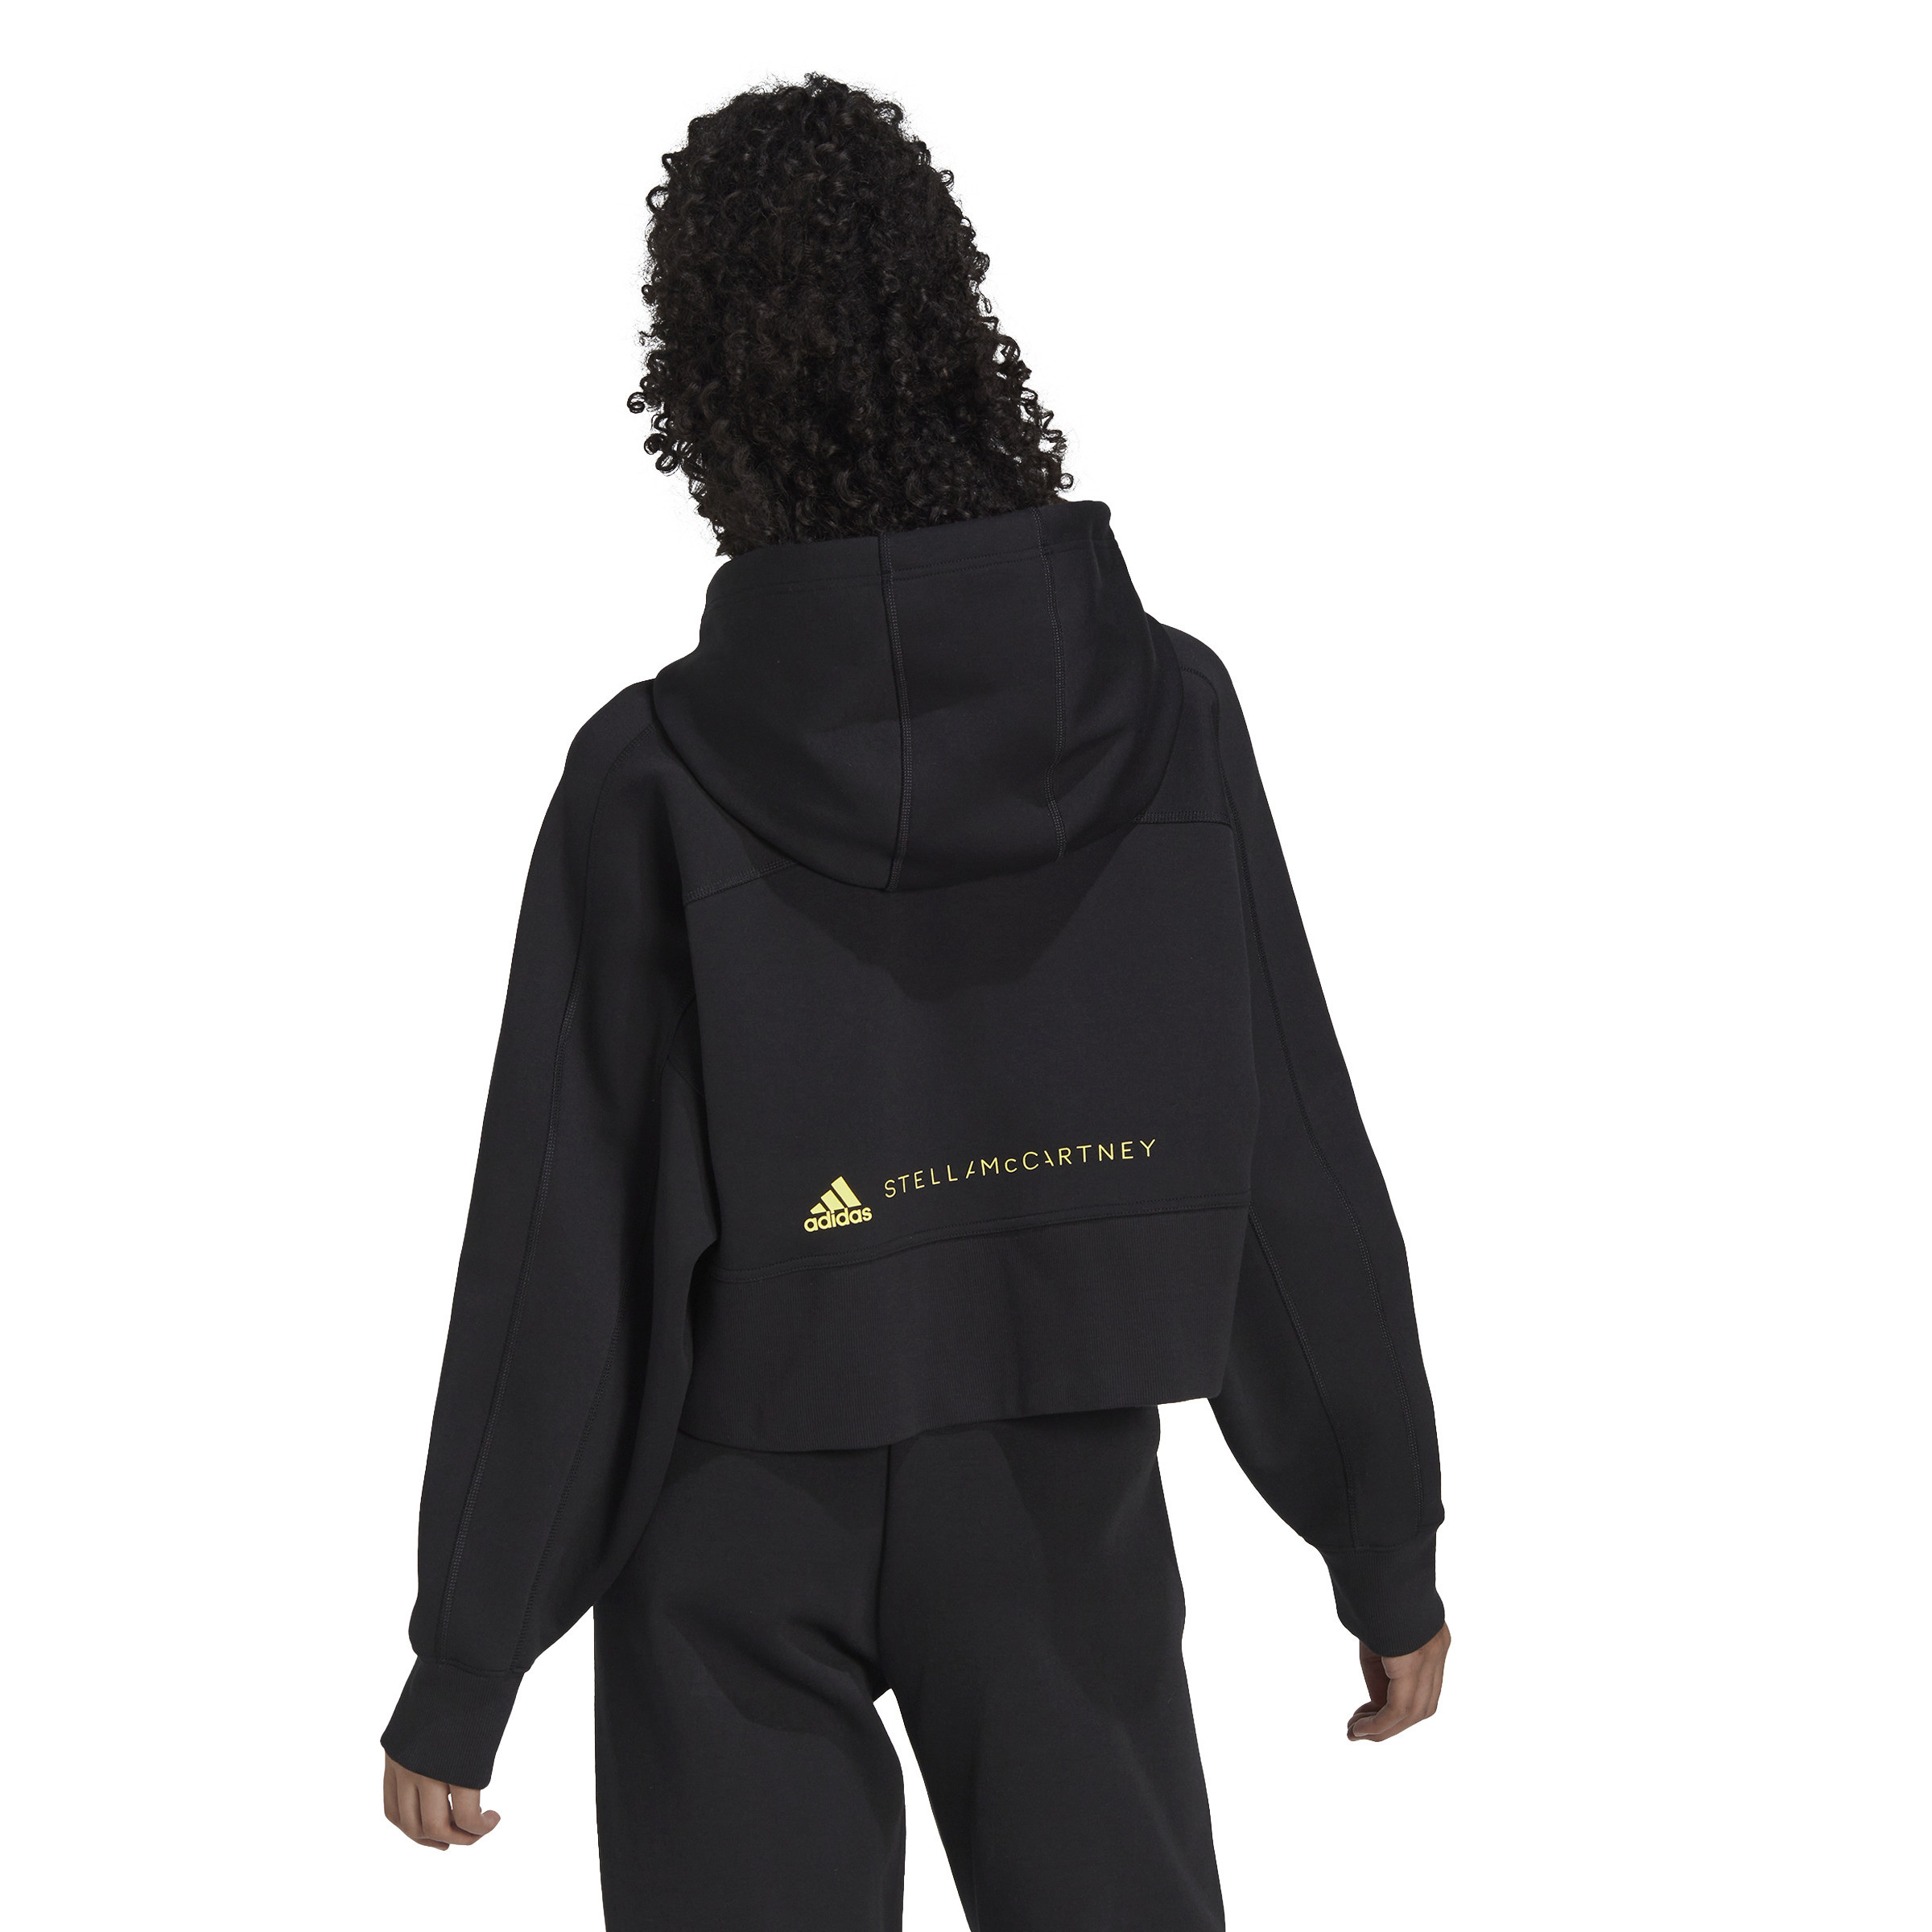 Adidas by Stella McCartney - Cropped hoodie, Black, large image number 4